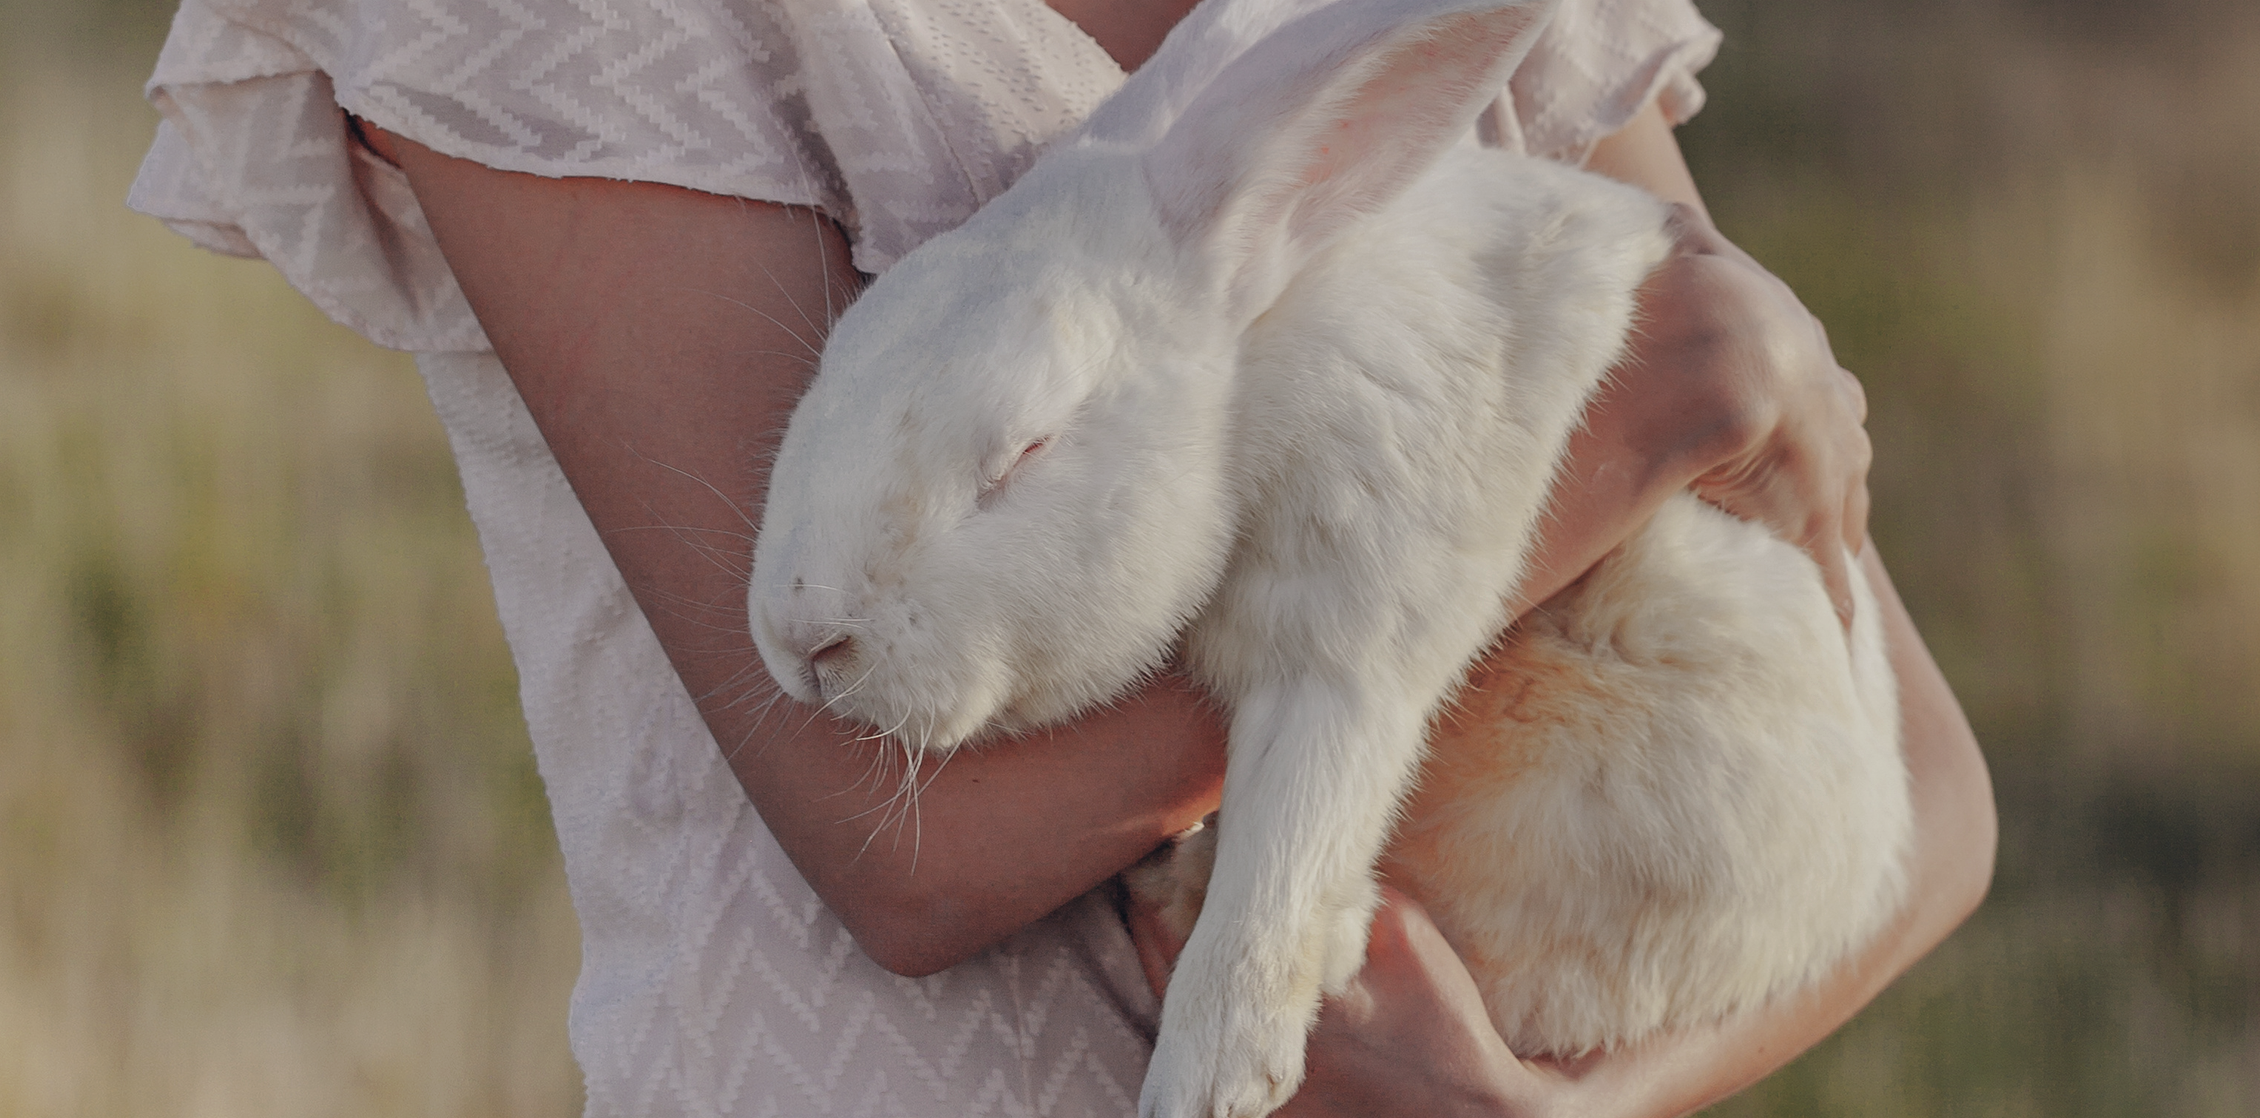 풀밭에서 한 사람이 크고 하얀 토끼를 두 손으로 안고 있고, 토끼는 눈을 감고 있는 평화로운 사진.